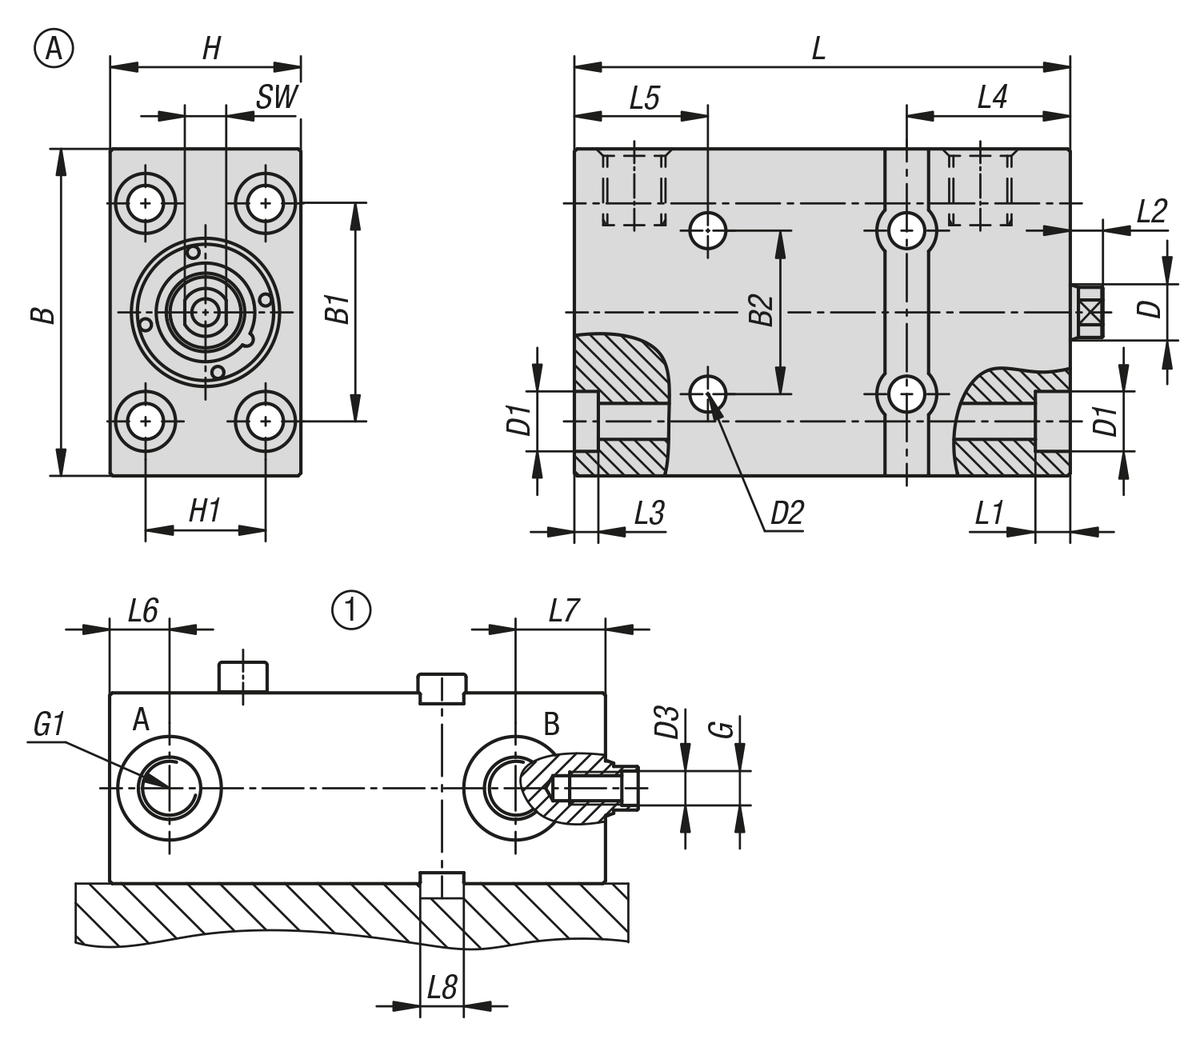 Blokcilinder hydraulisch met metalen afstrijker
dubbel-/enkelwerkend met veerretour, vorm A